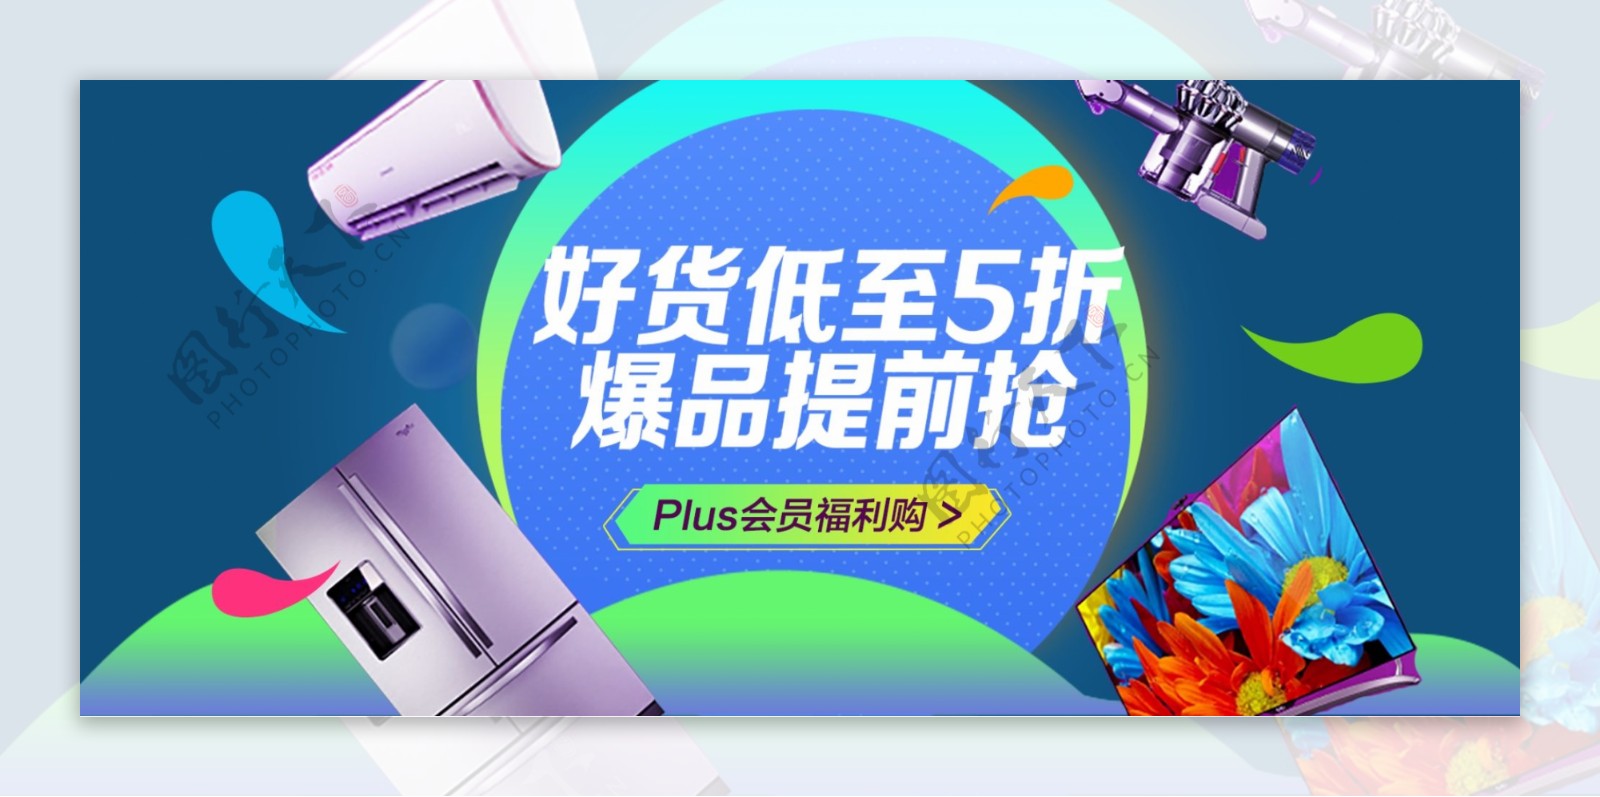 电商淘宝京东数码电器简约大气促销海报